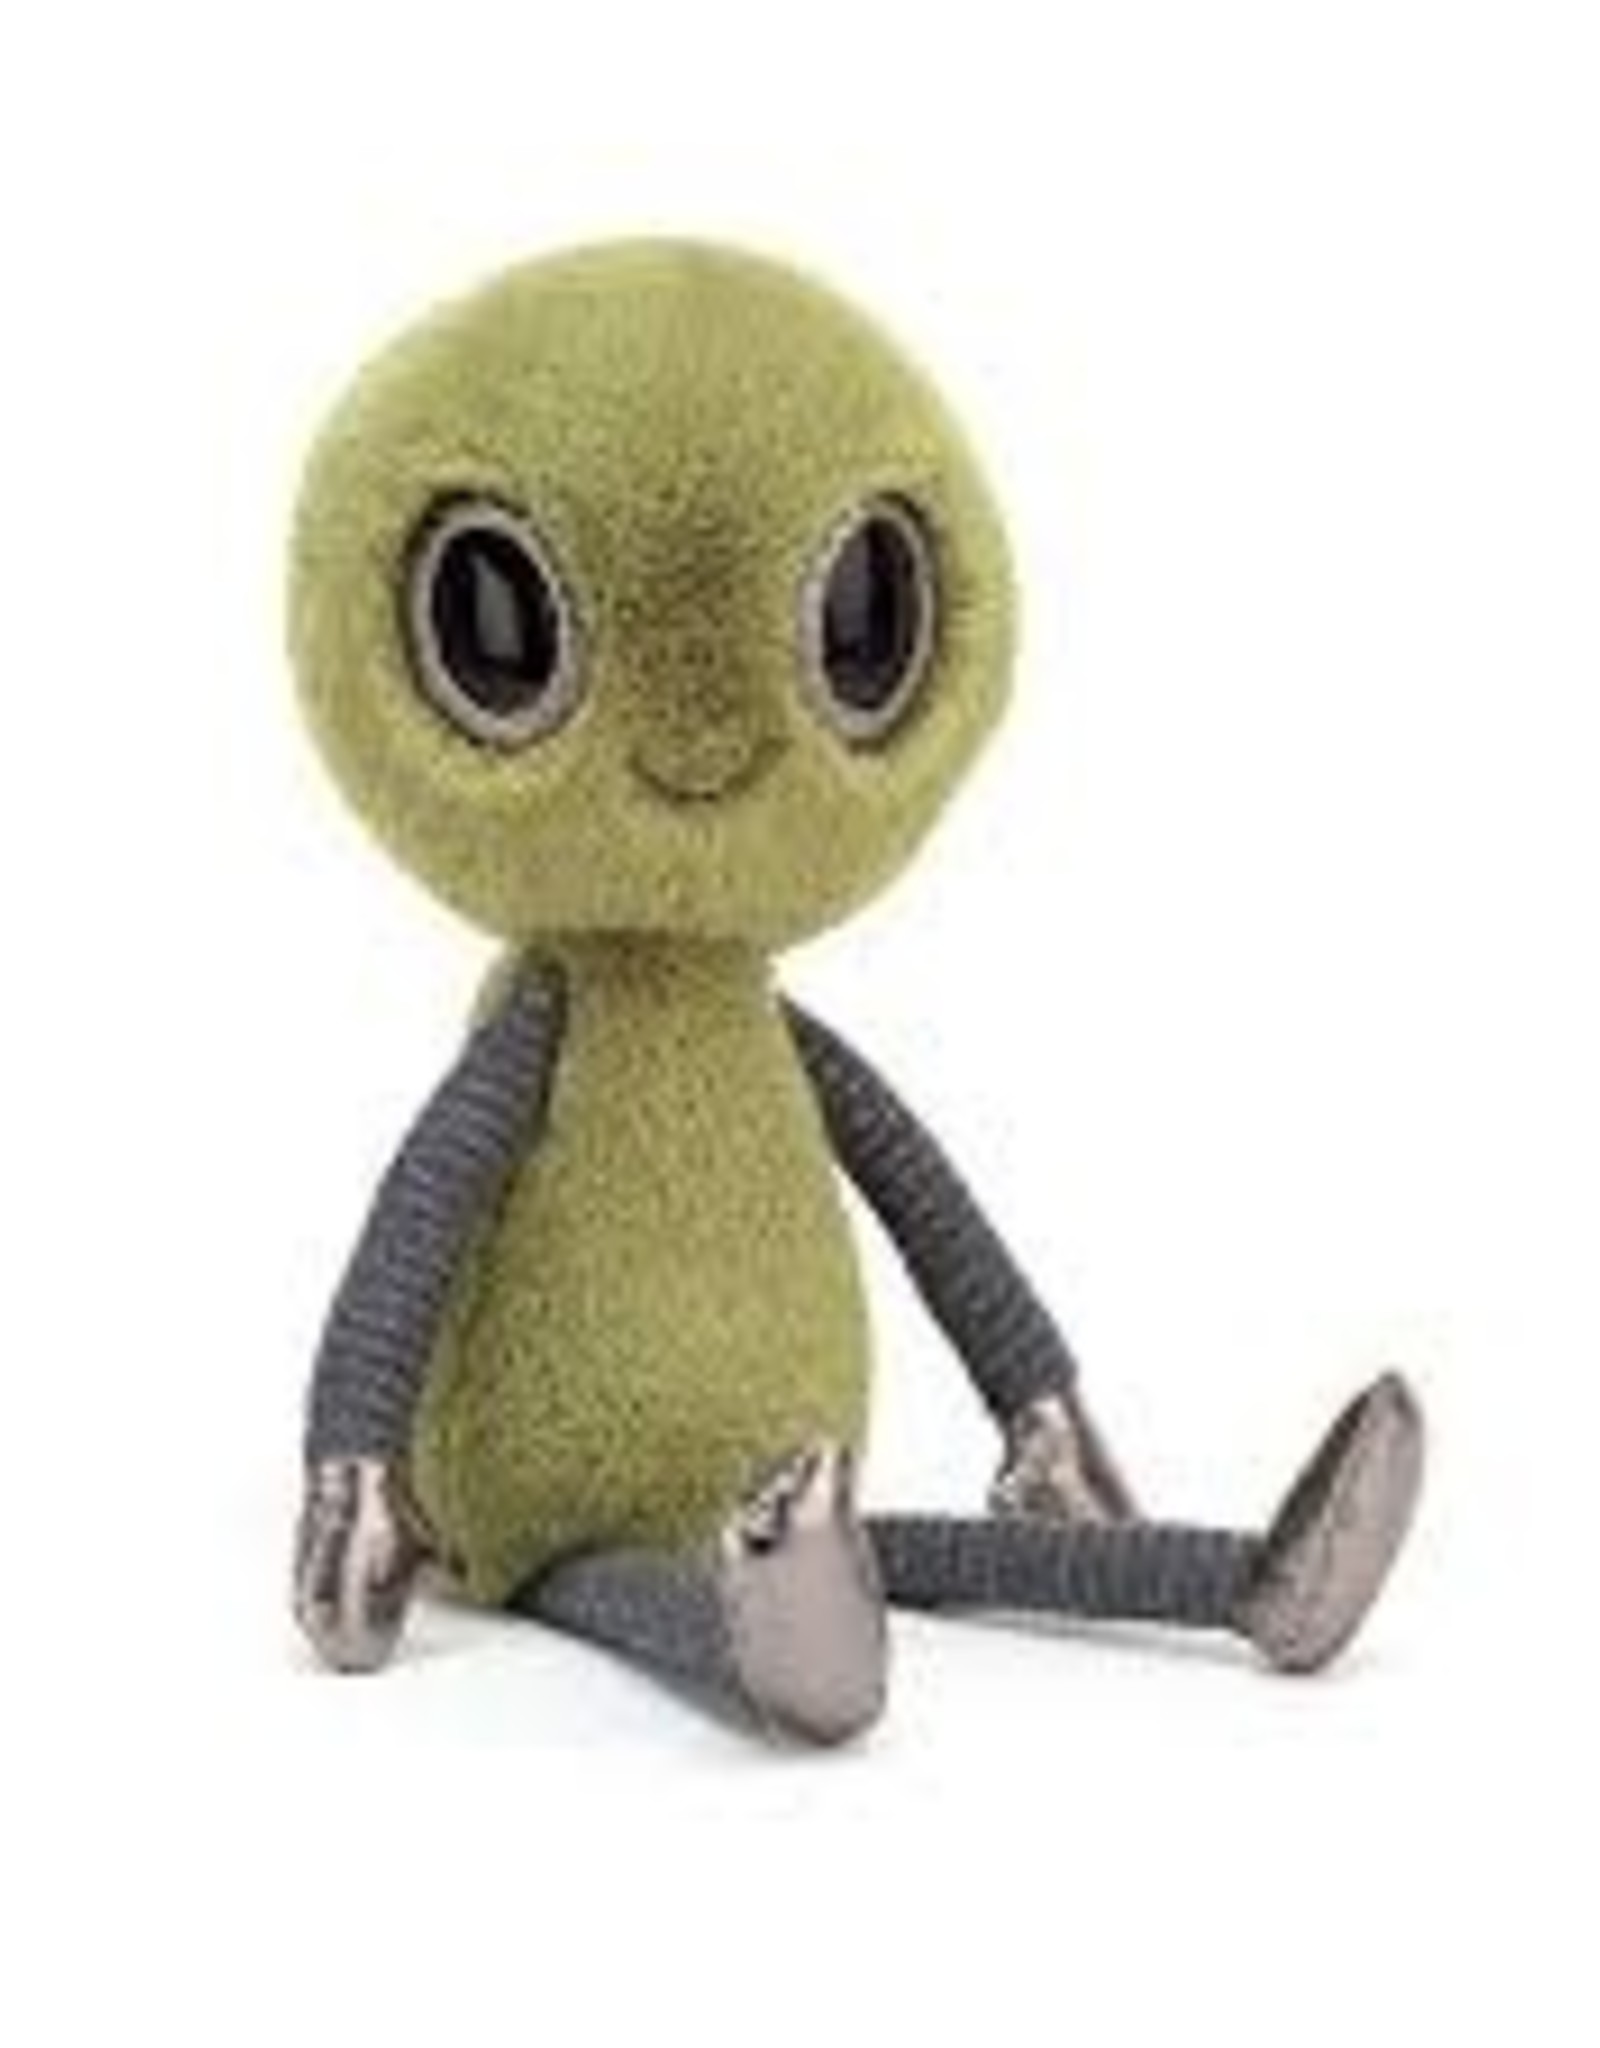 stuffed alien